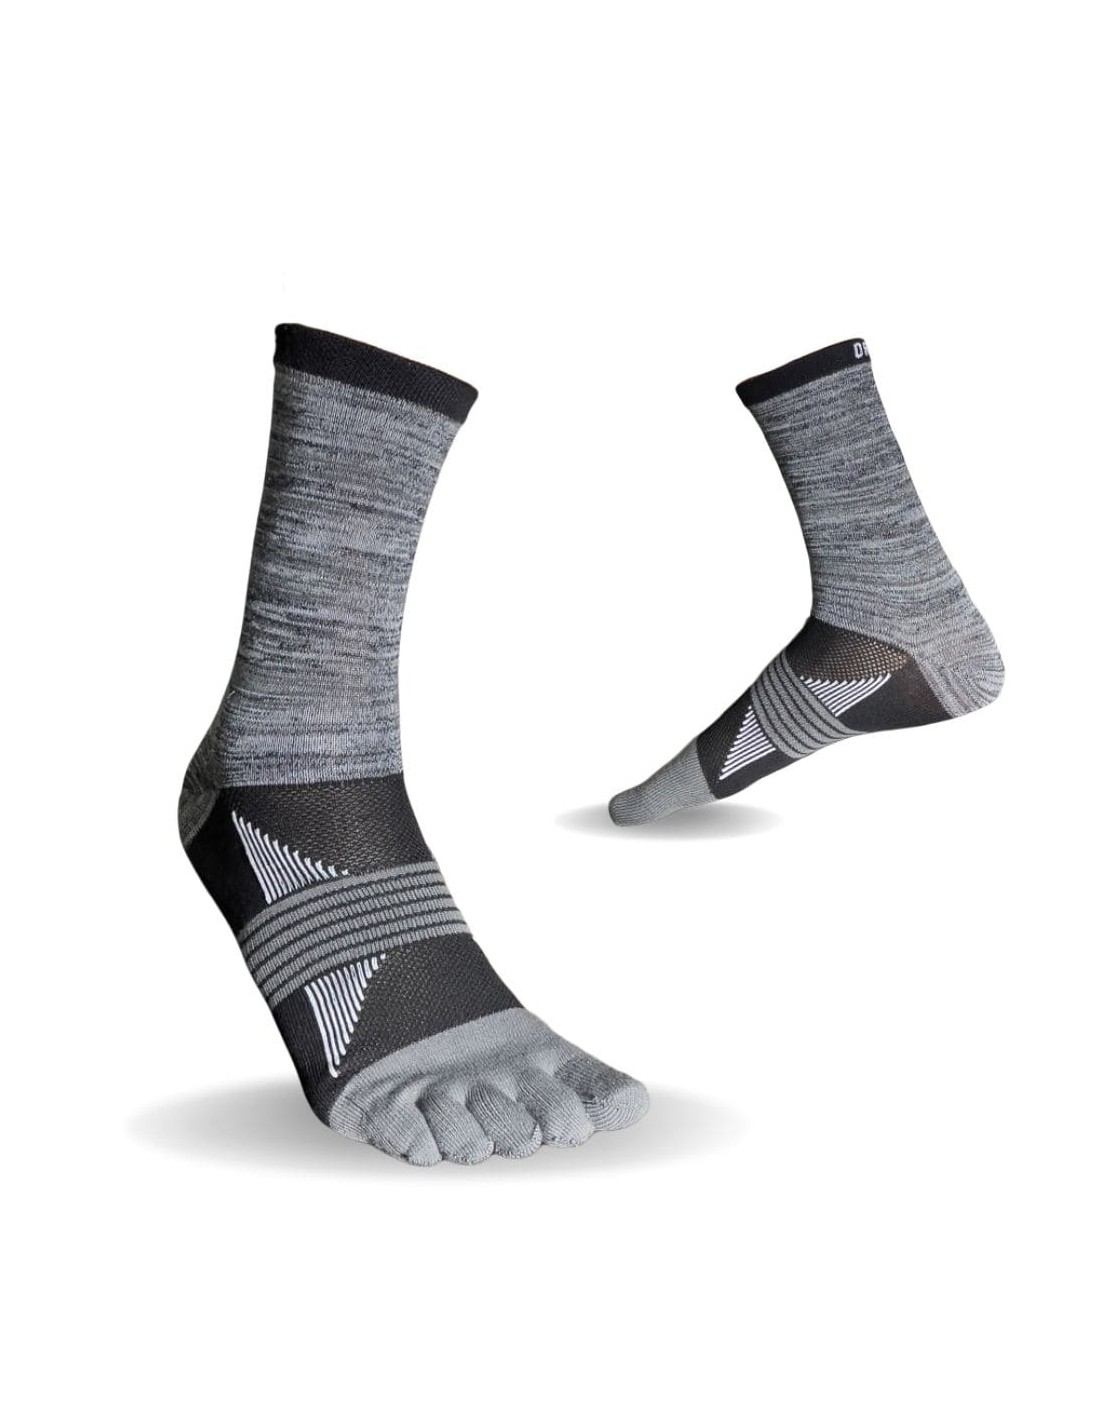 Ortles Sand - Hohe 5 Finger Trailrunning-Socken